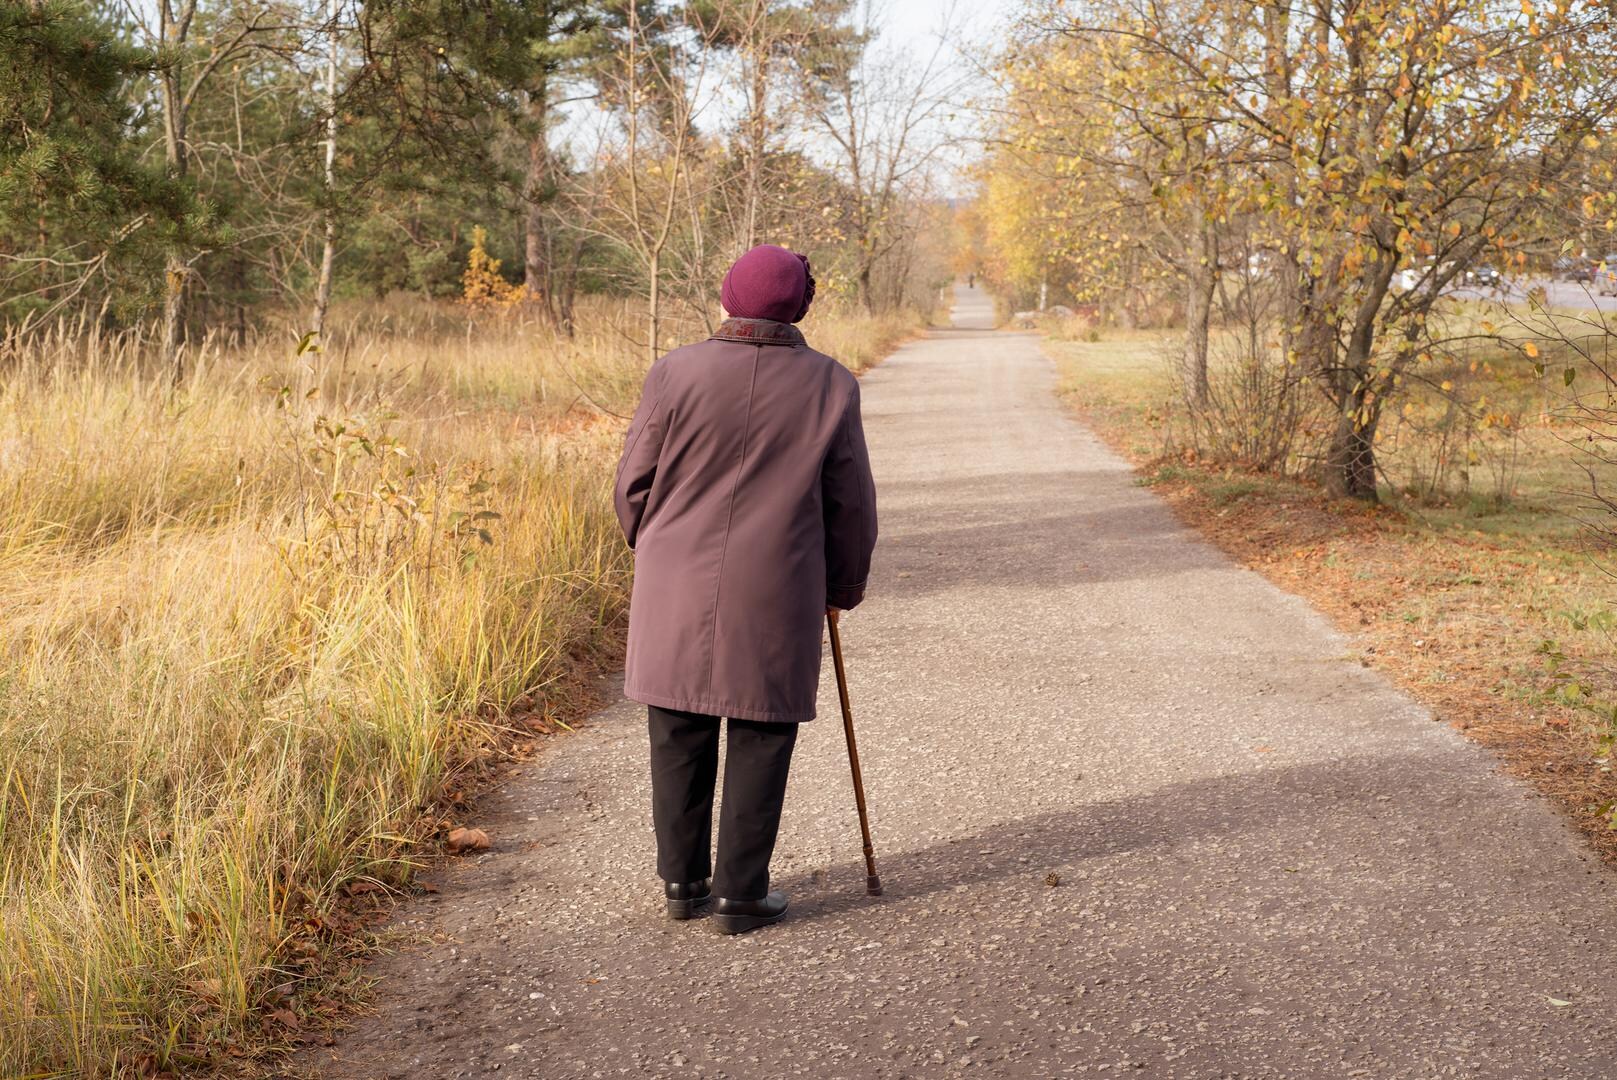 Vorig jaar 136 bejaarden vermist: demente senioren krijgen polsbandje met chip